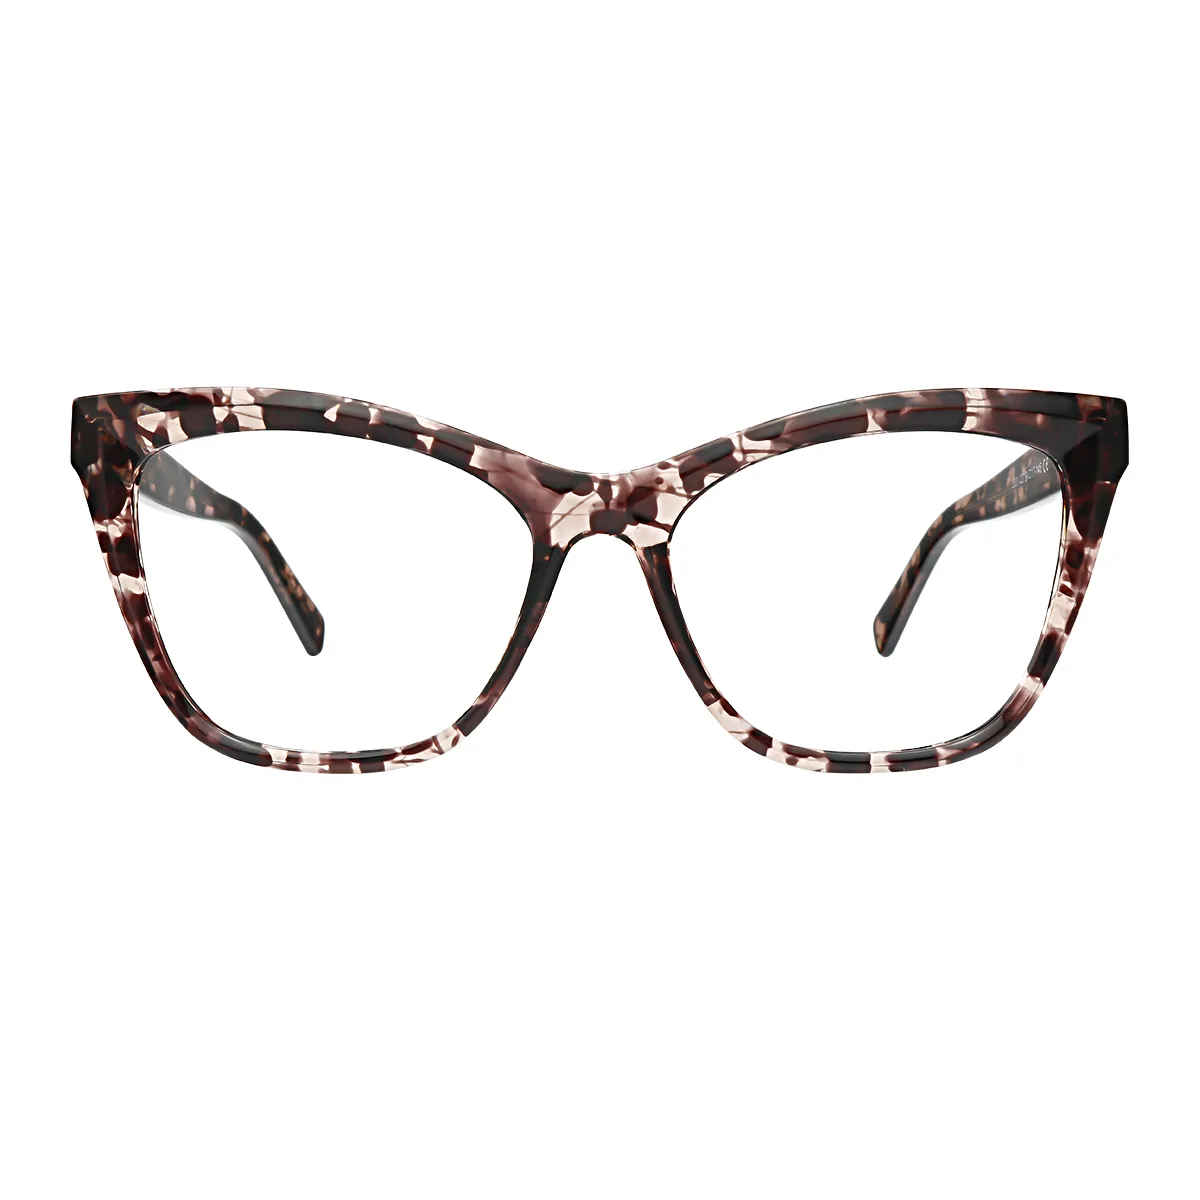 Dame - Cat-Eye Tortoiseshell Glasses for Women